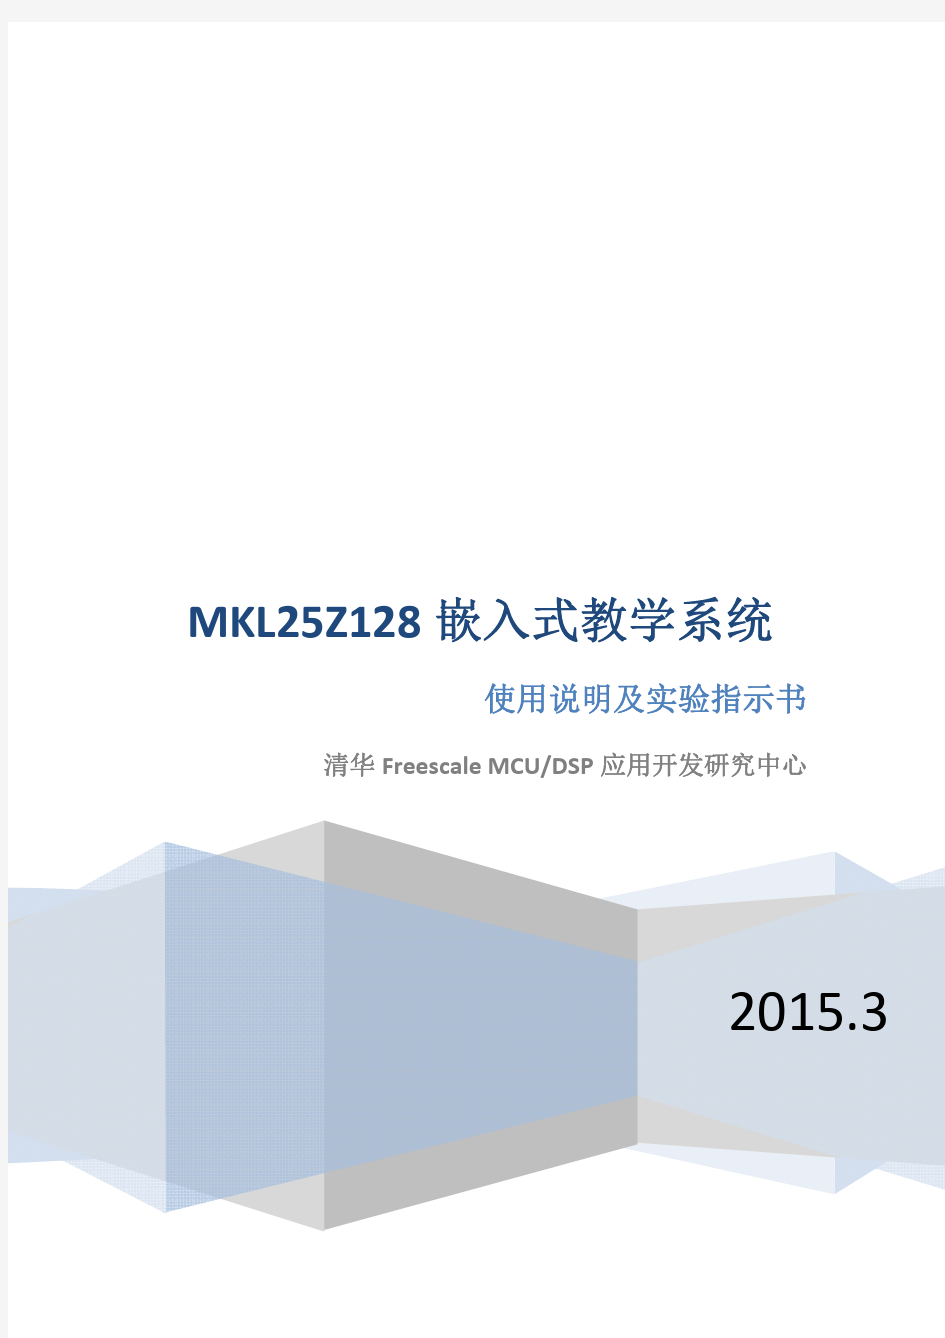 MKL25Z128嵌入式教学系统使用说明及实验指示书(第五版)